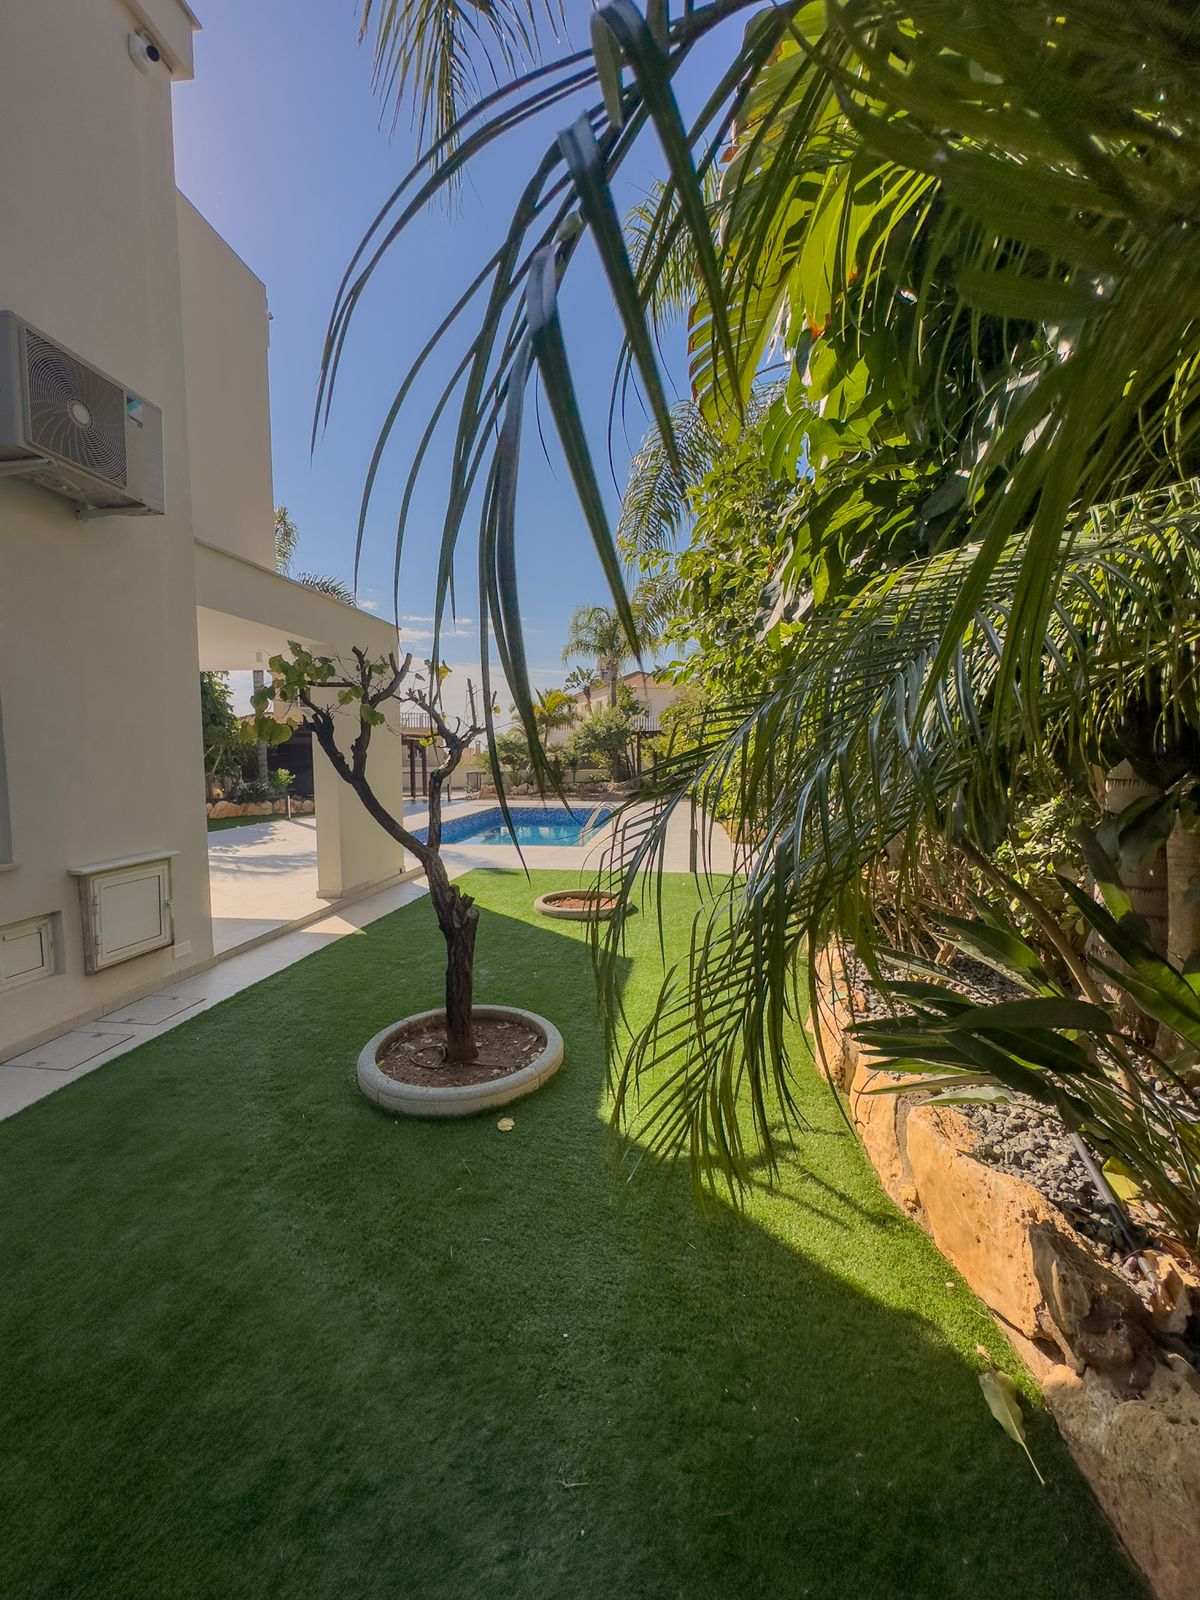 Продам дом в 2 этажа Кипр, г. Айя-Напа (Ayia Napa), 700 000 Евро. - фотография